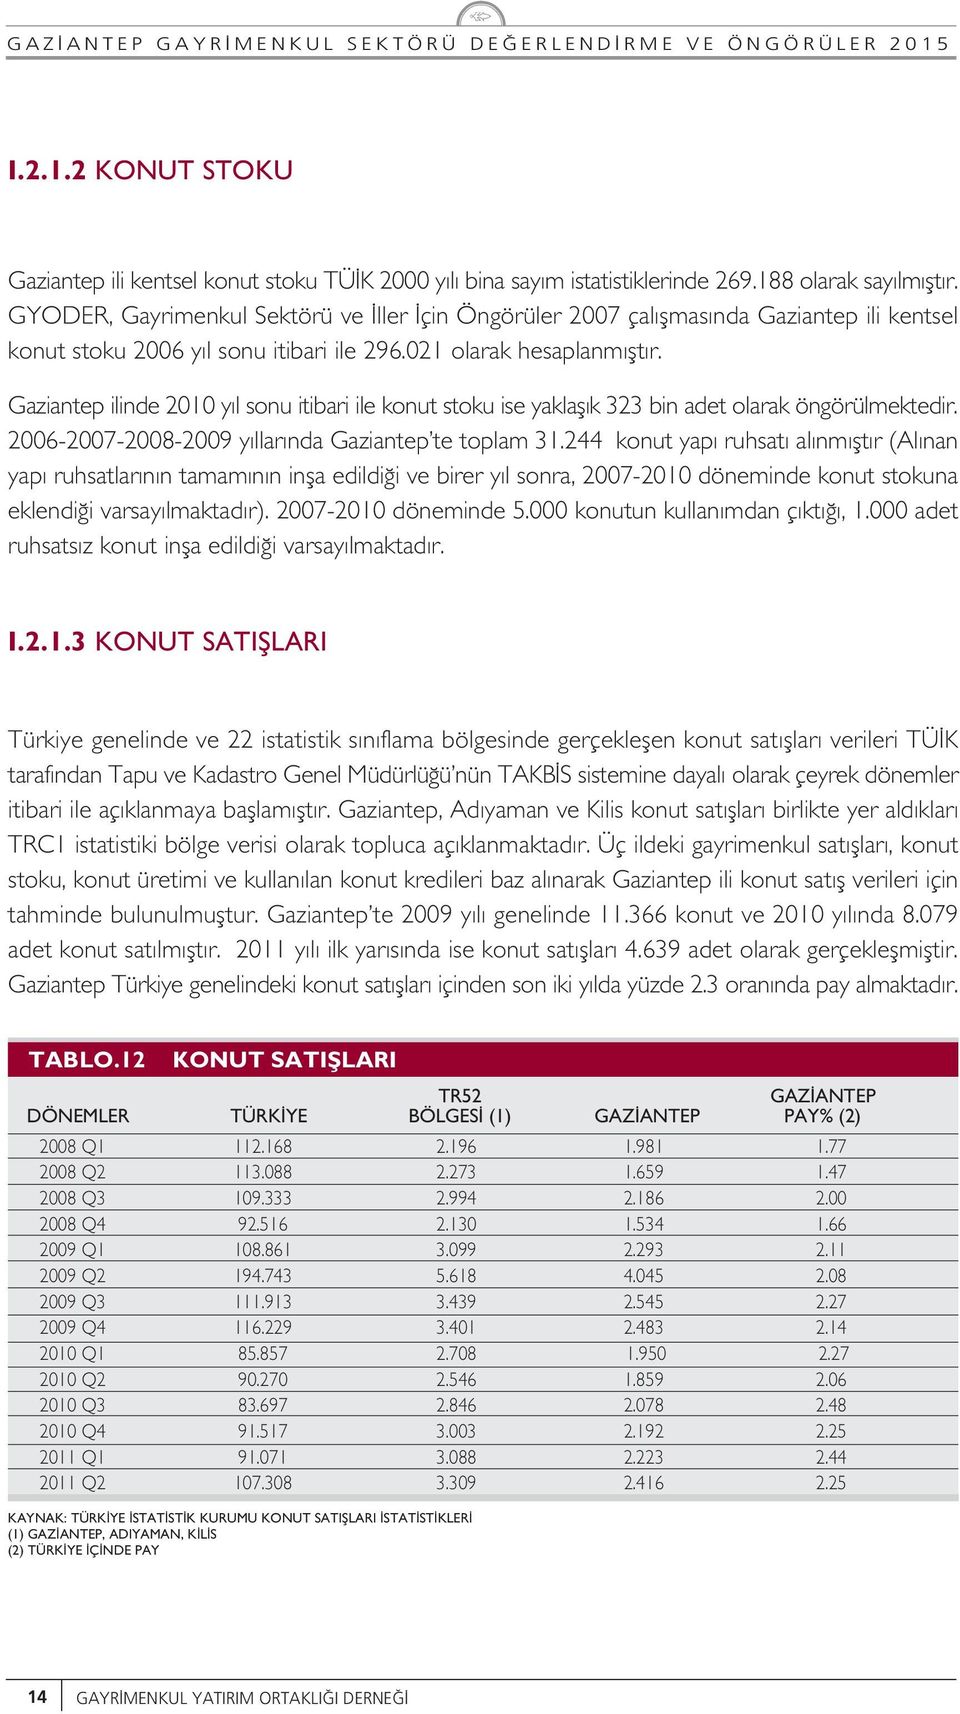 Gaziantep ilinde 2010 y l sonu itibari ile konut stoku ise yaklafl k 323 bin adet olarak öngörülmektedir. 2006-2007-2008-2009 y llar nda Gaziantep te toplam 31.